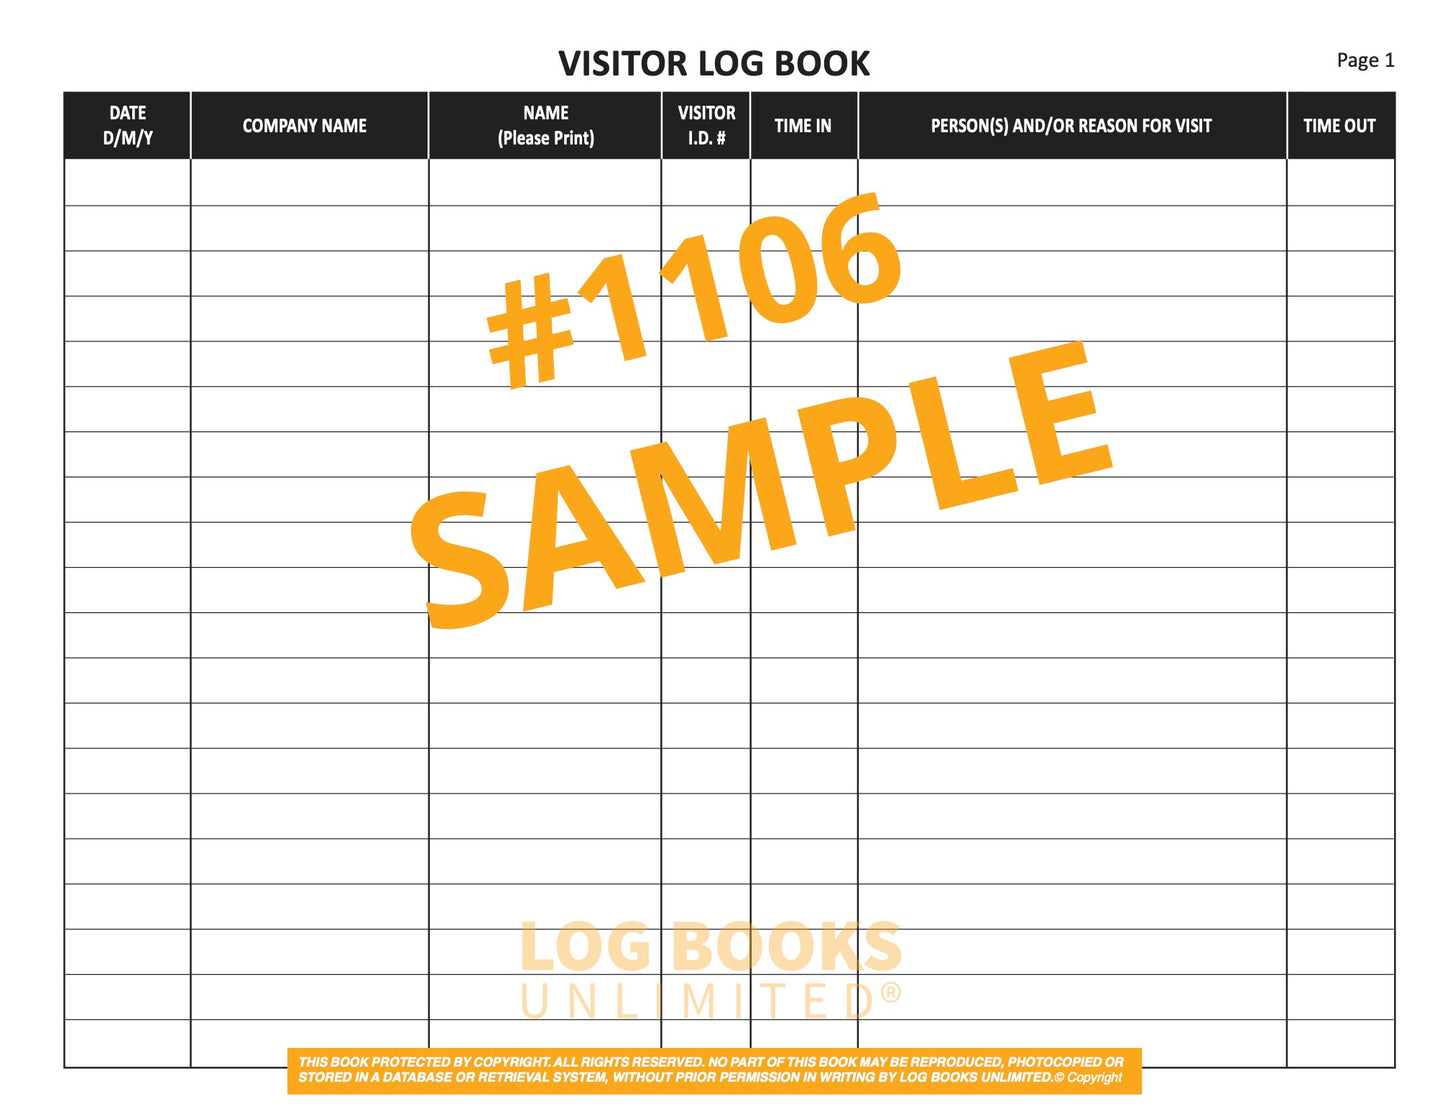 Visitor Log Book - Sample